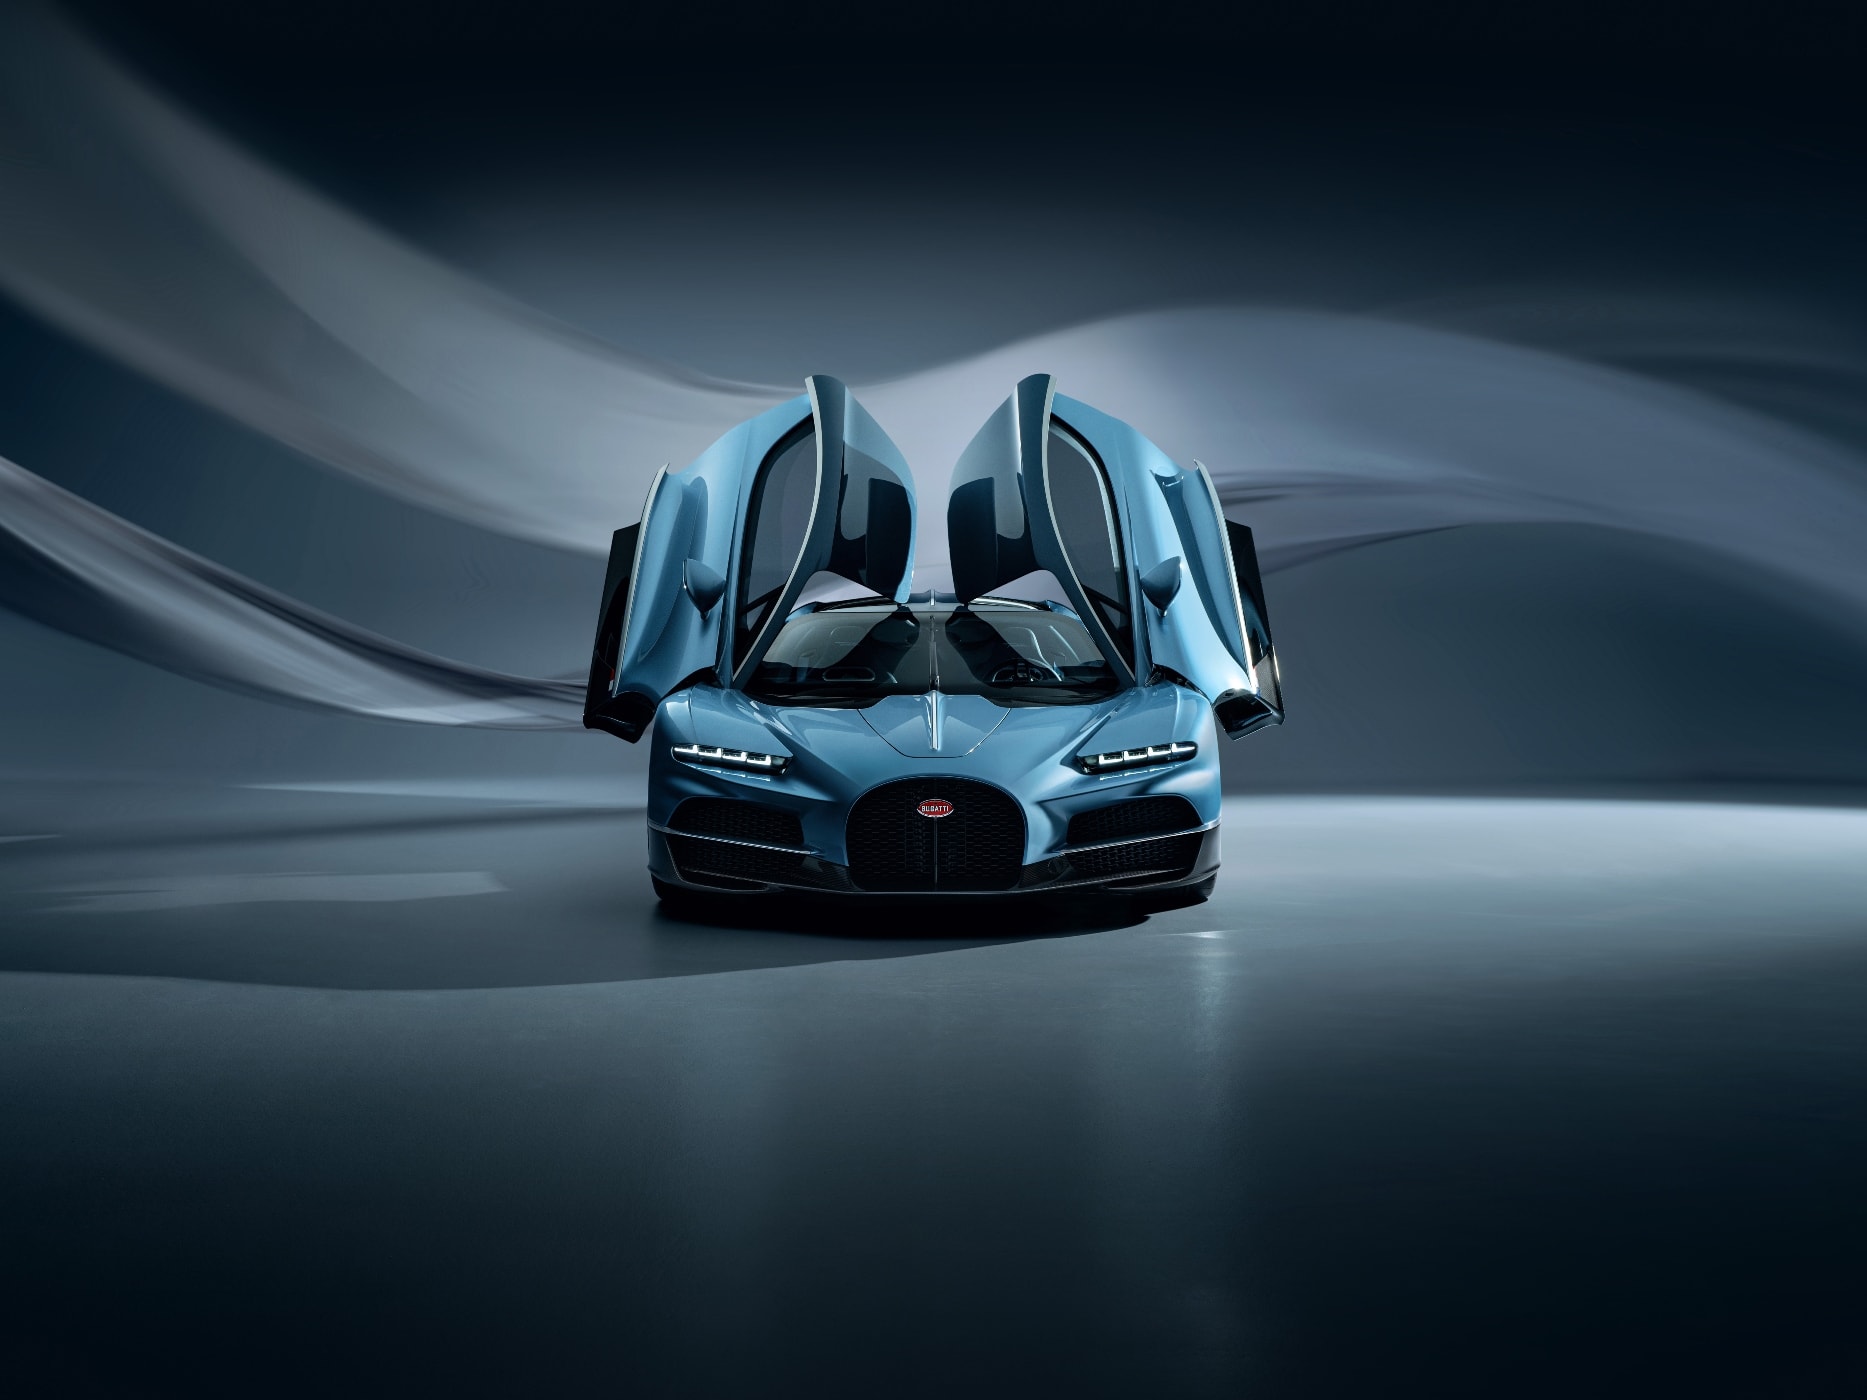 Introducing the Bugatti Rimac Tourbillon